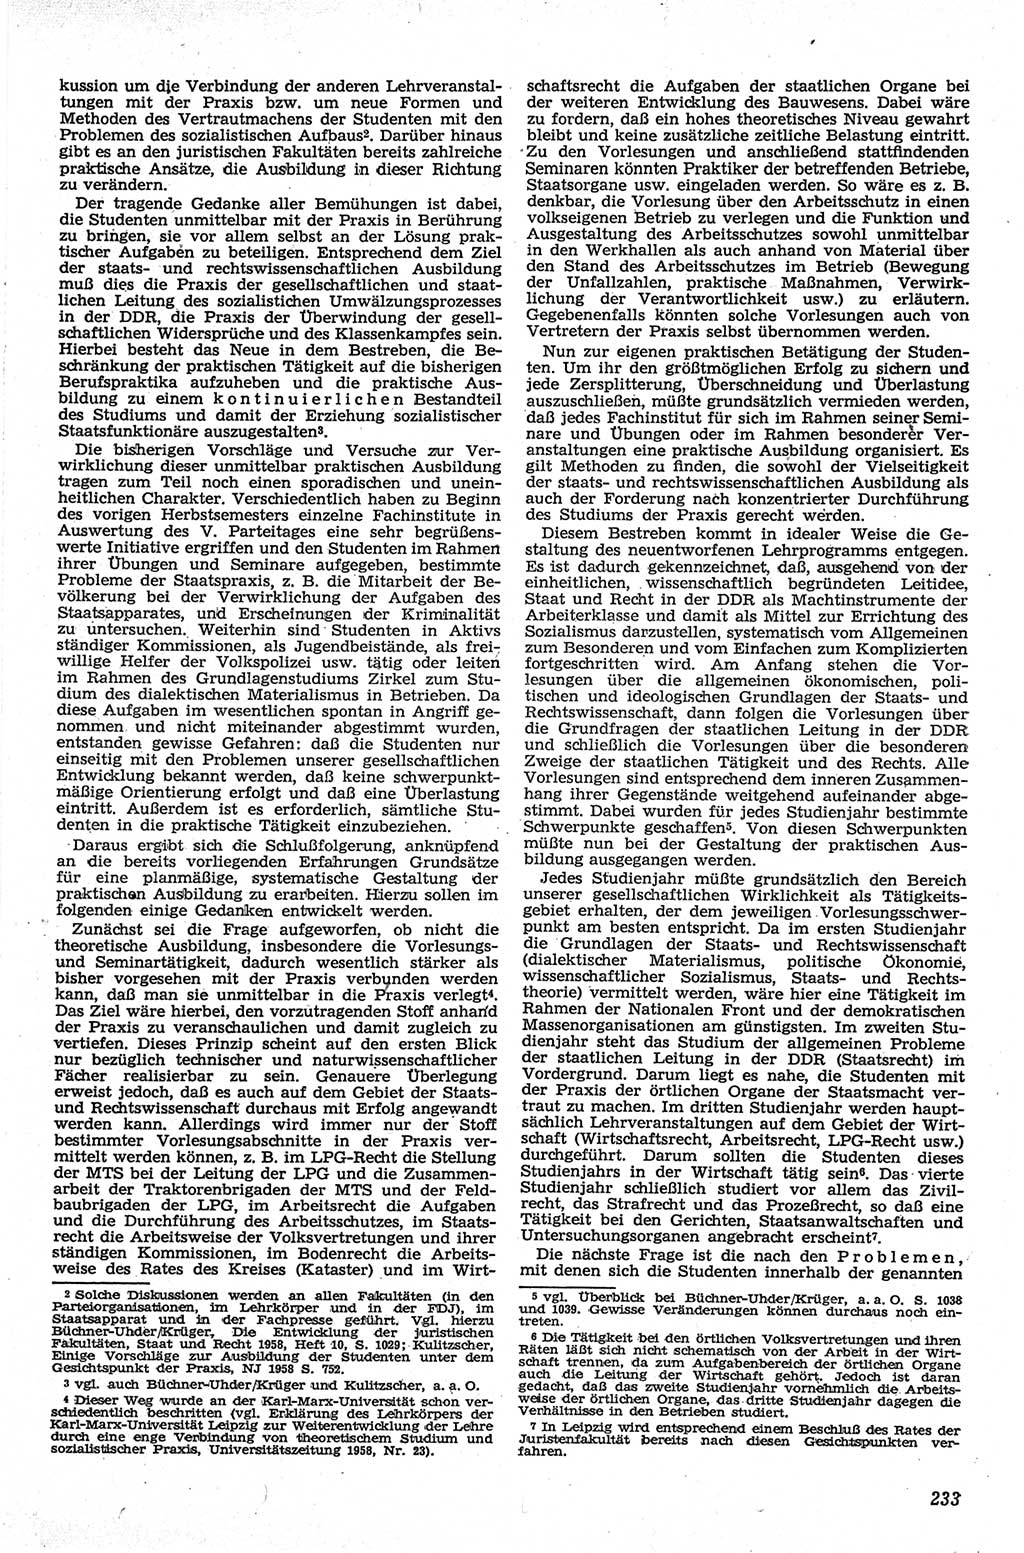 Neue Justiz (NJ), Zeitschrift für Recht und Rechtswissenschaft [Deutsche Demokratische Republik (DDR)], 13. Jahrgang 1959, Seite 233 (NJ DDR 1959, S. 233)